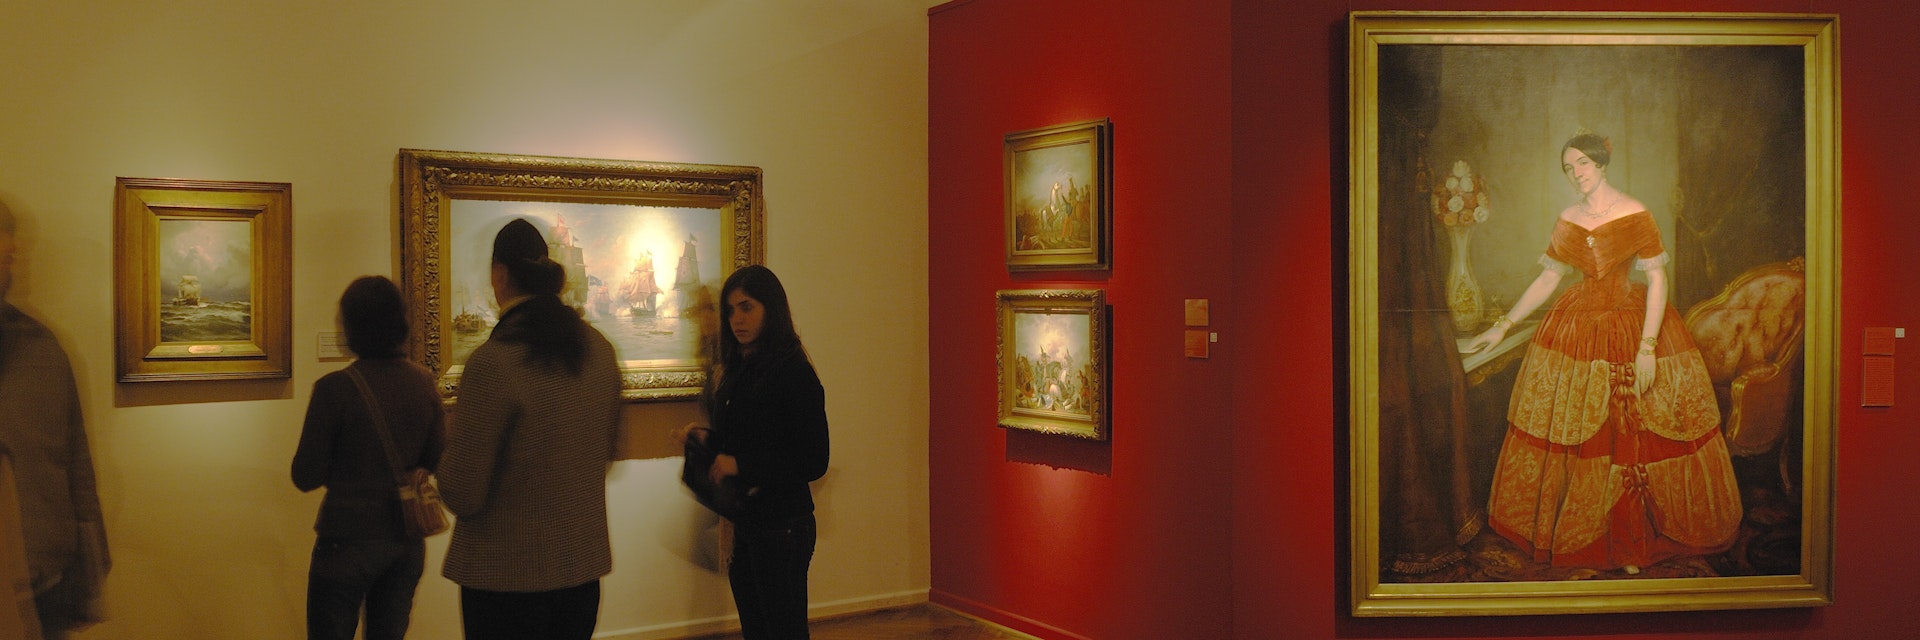 Interior of Museo Nacional de Bellas Artes (National Museum of Fine Arts).